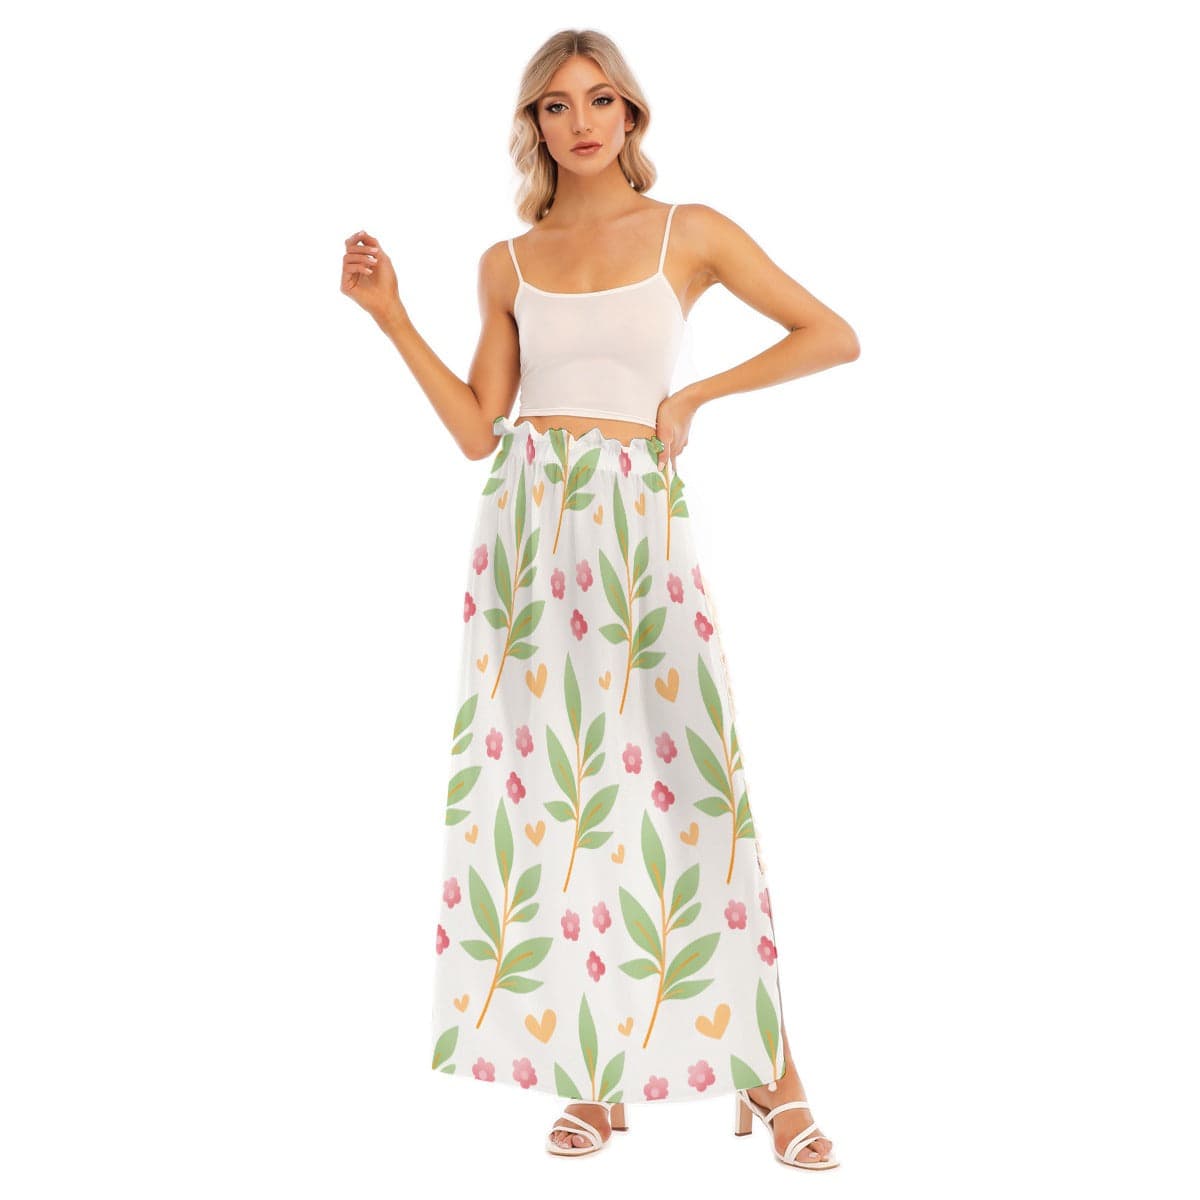 Yoycol Skirt 2XL / White Sheer Blossoms - Women's Side Split Skirt